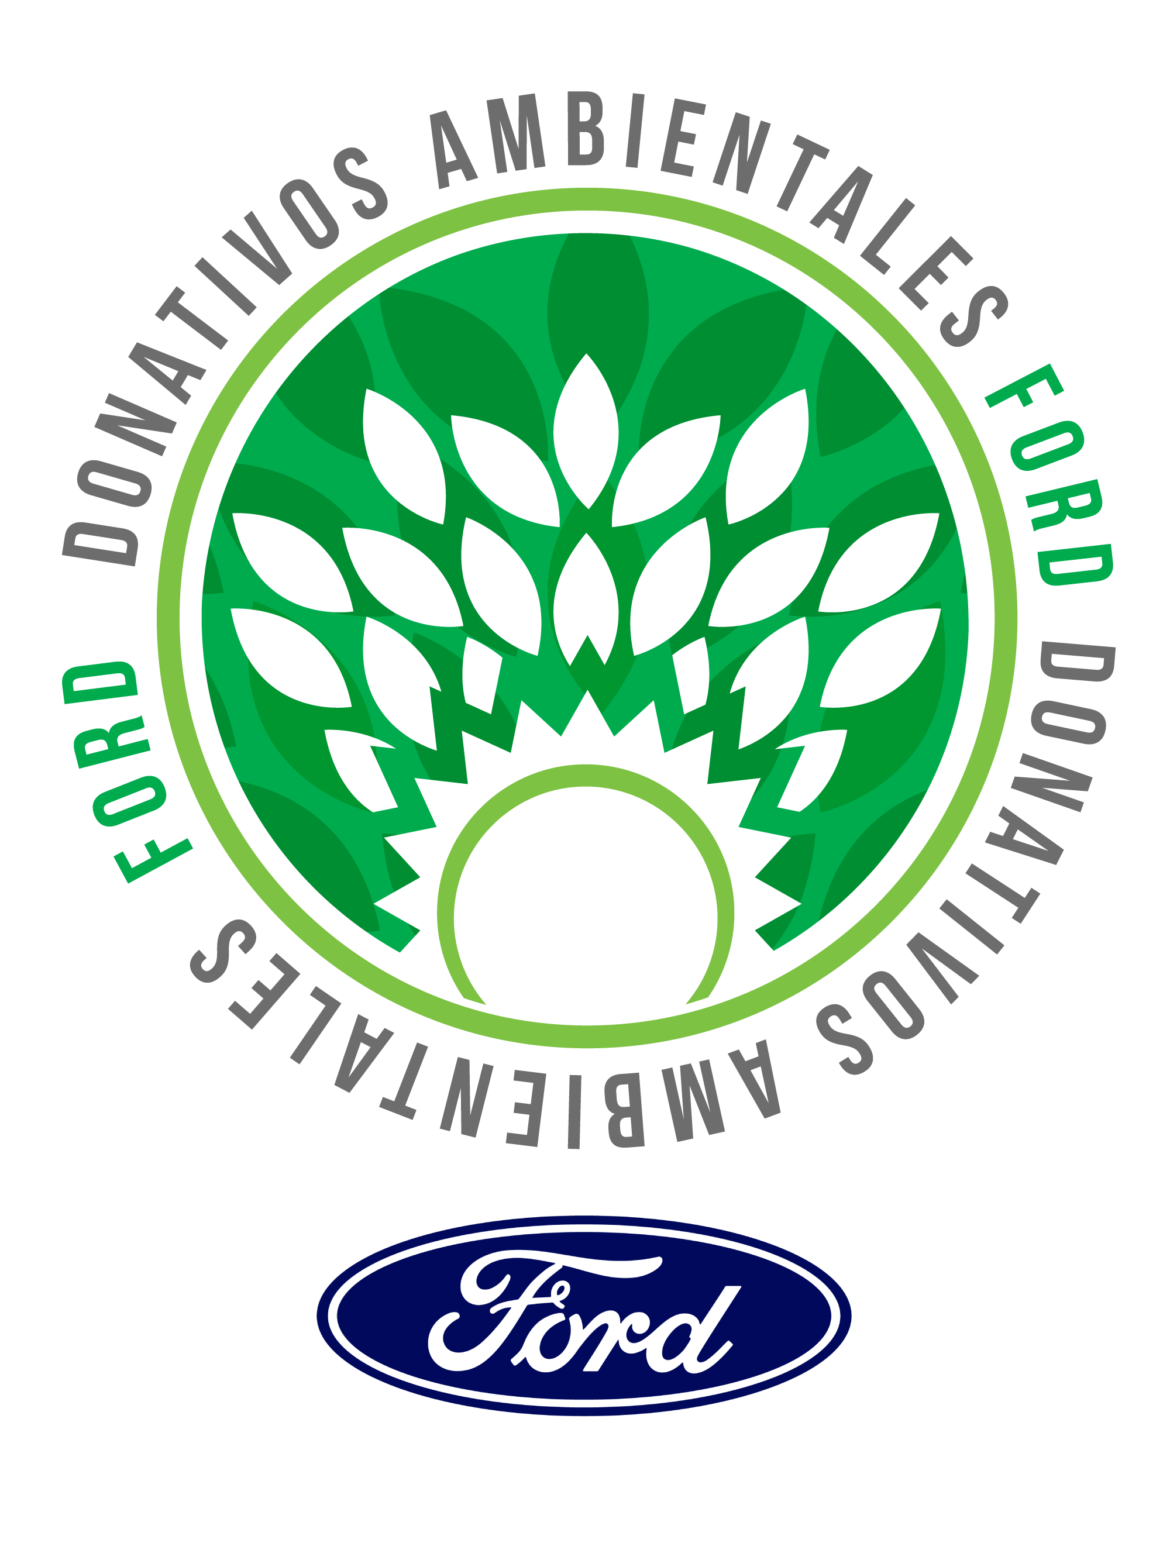 Ford anuncia convocatoria para la edición 21 de su programa Donativos Ambientales Ford